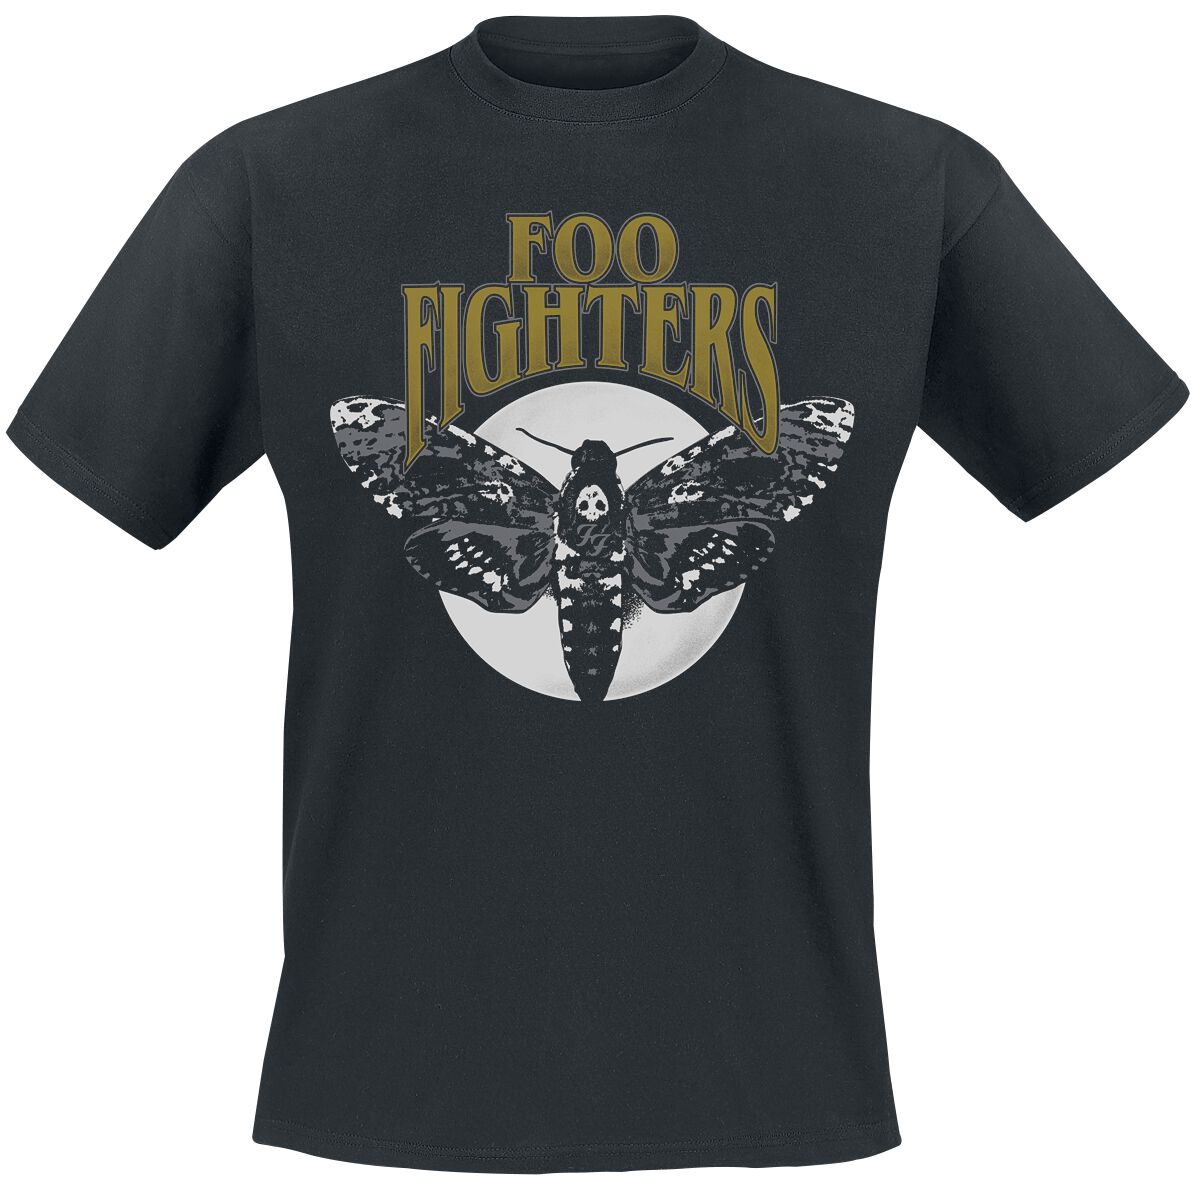 Foo Fighters T-Shirt - Hawk Moth - S bis XXL - für Männer - Größe L - schwarz  - Lizenziertes Merchandise!